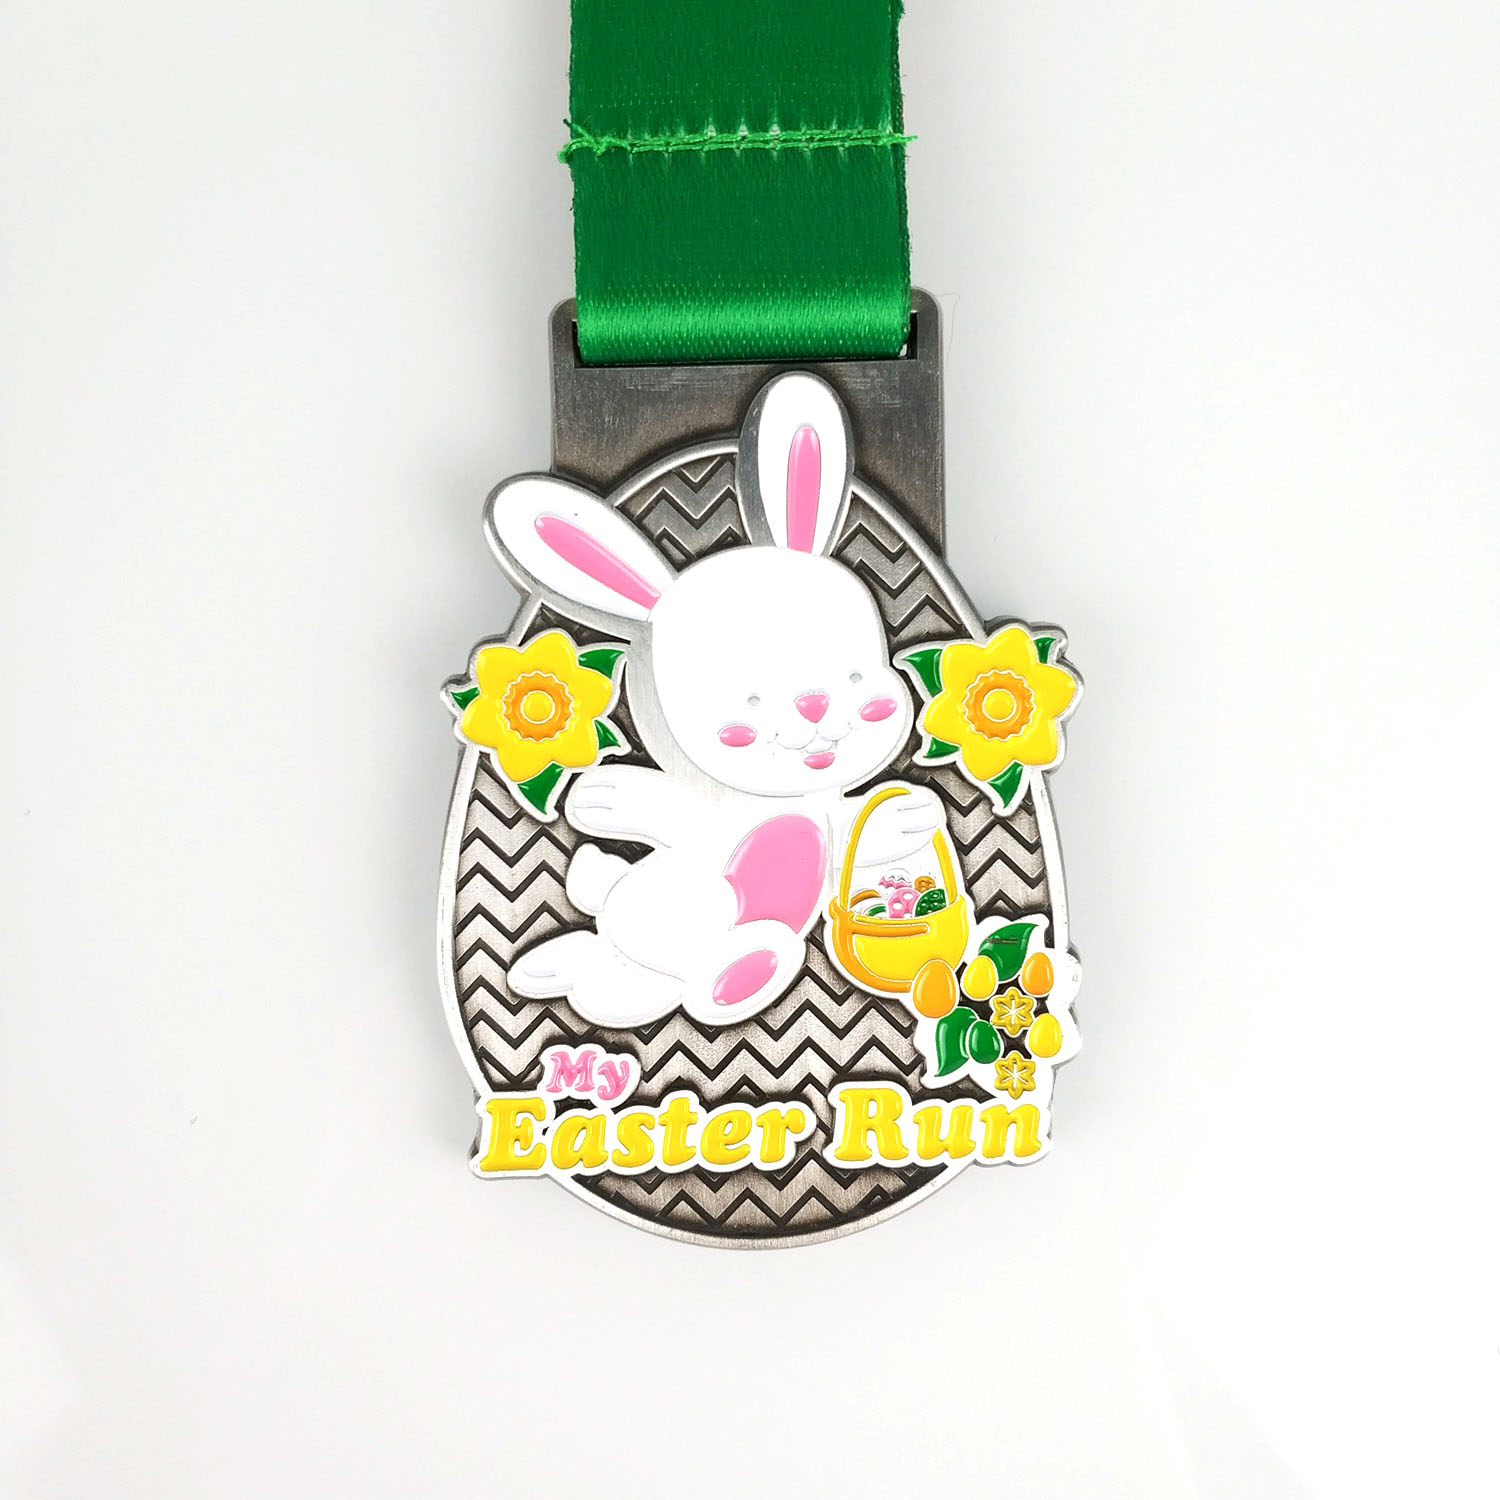 Easter Medal 2021 (1)